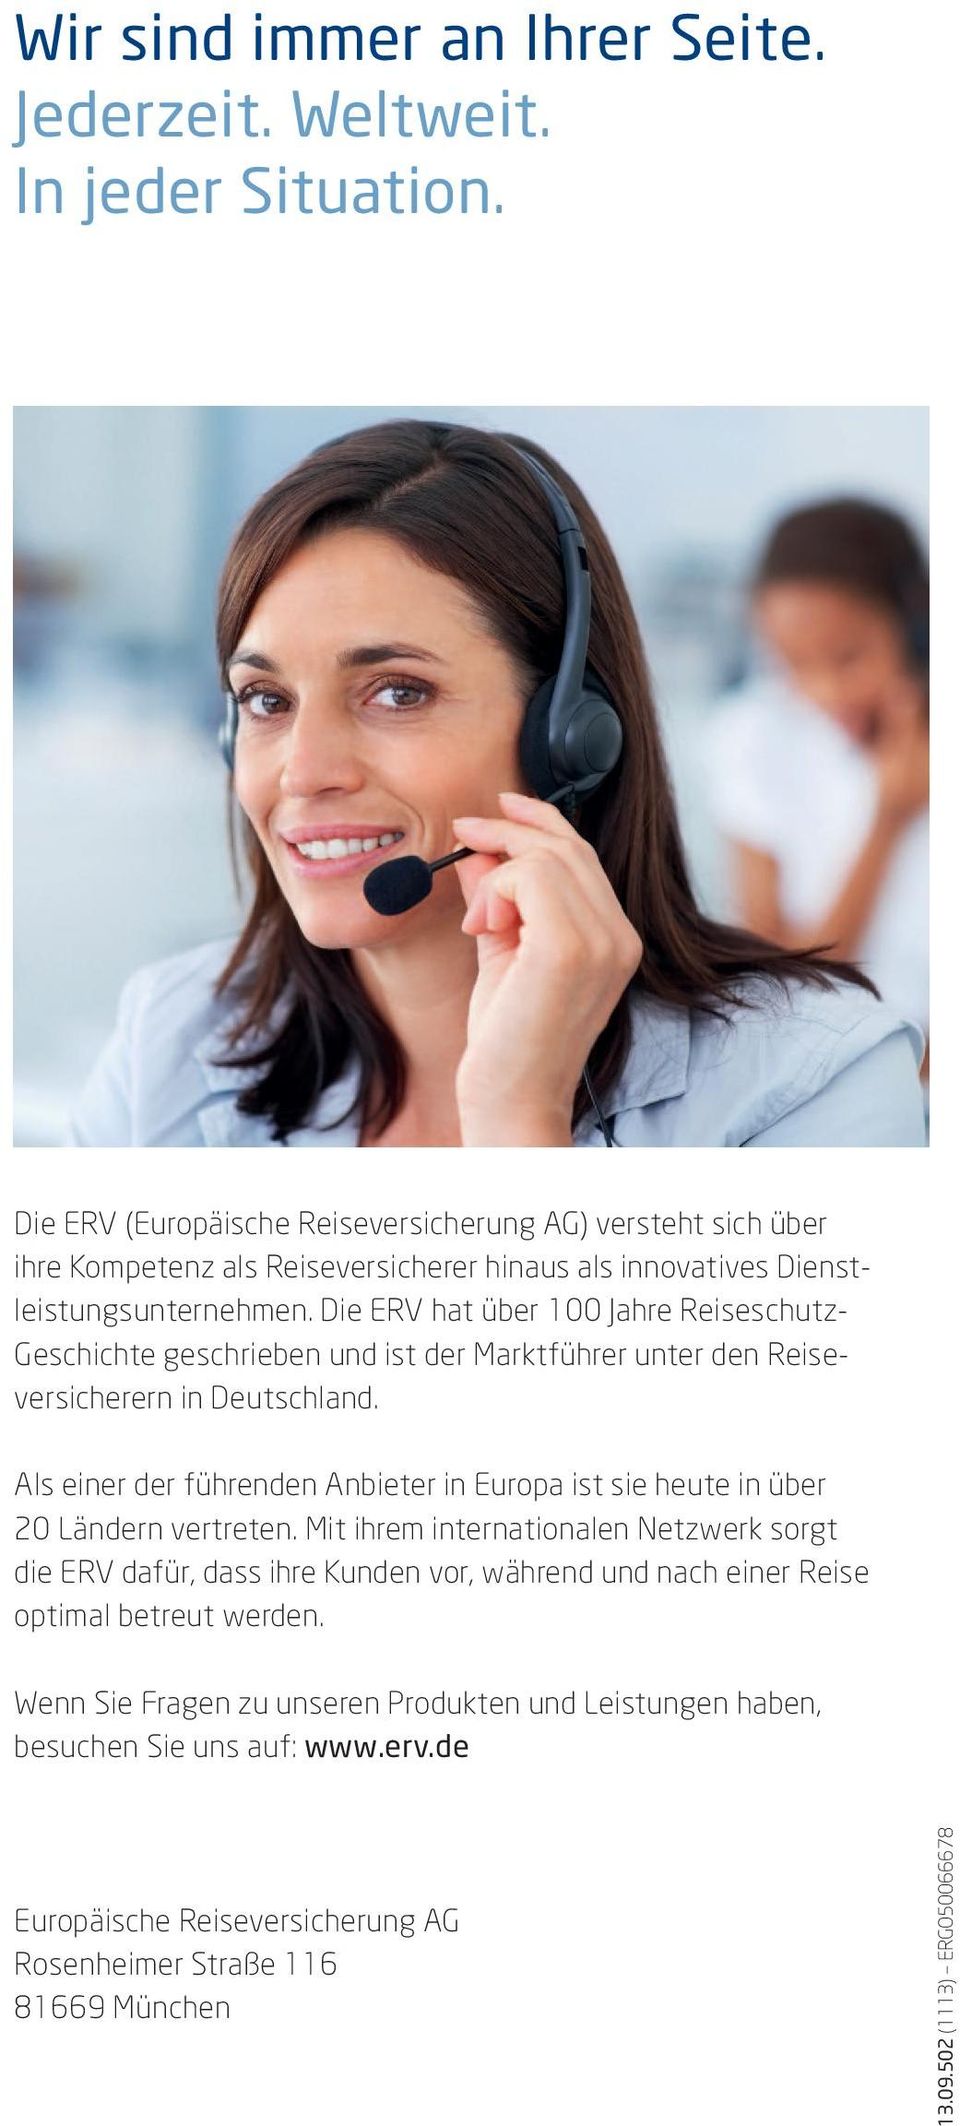 Die ERV hat über 100 Jahre Reiseschutz- Geschichte geschrieben und ist der Marktführer unter den Reiseversicherern in Deutschland.